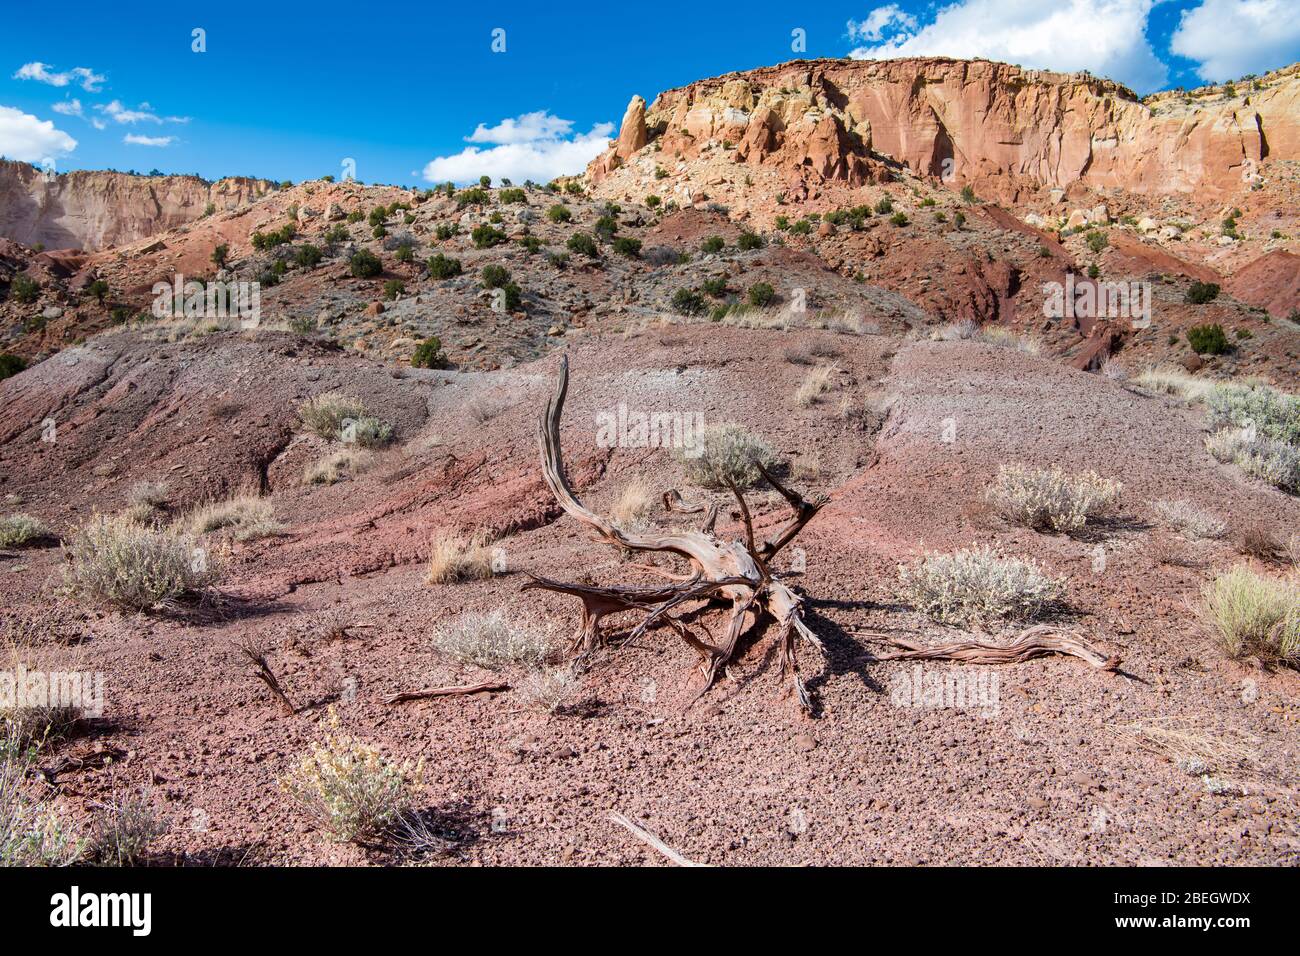 Paysage désertique avec un tronc d'arbre mort torsadé sous une mesa colorée avec de hautes falaises et formations rocheuses dans le nord du Nouveau Mexique Banque D'Images